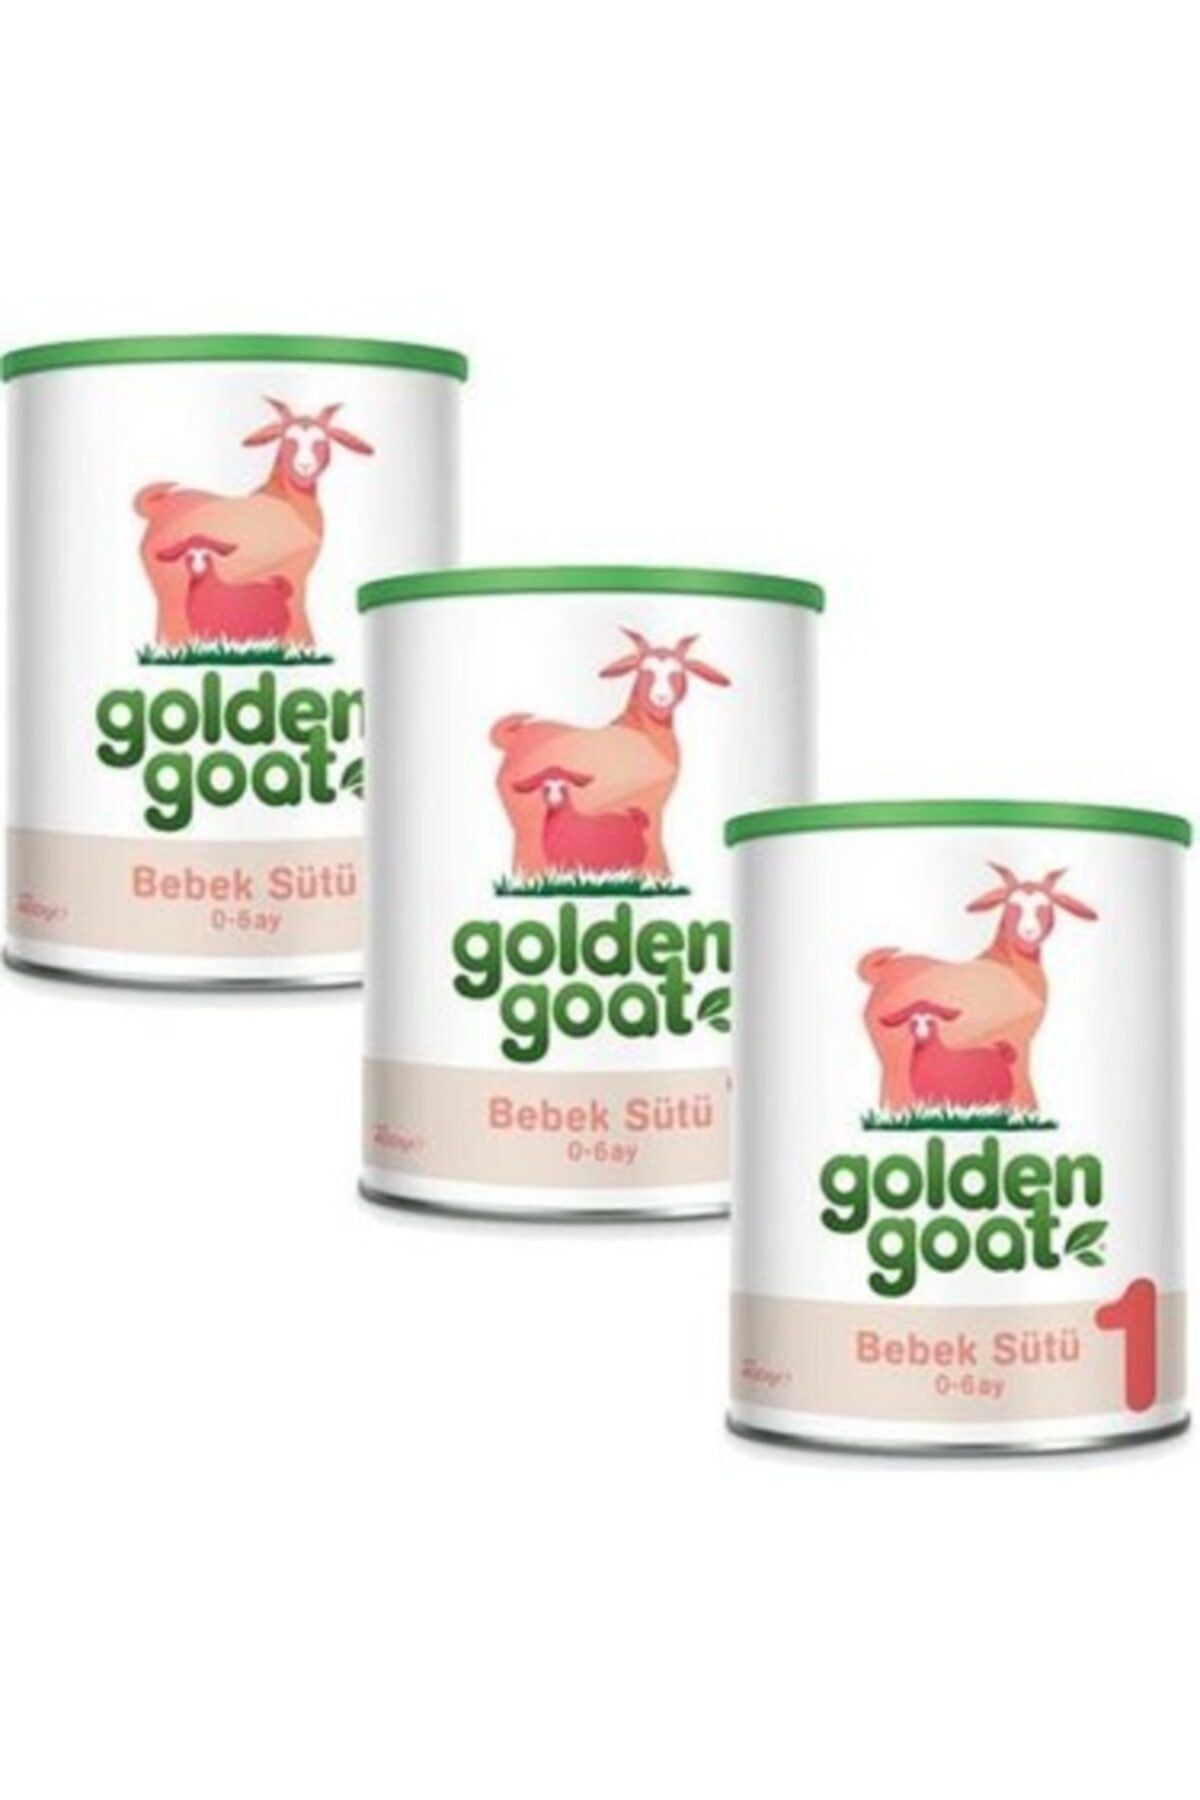 Golden Goat 1 Keçi Sütü Bazlı Bebek Sütü 400 gr - 3'lü